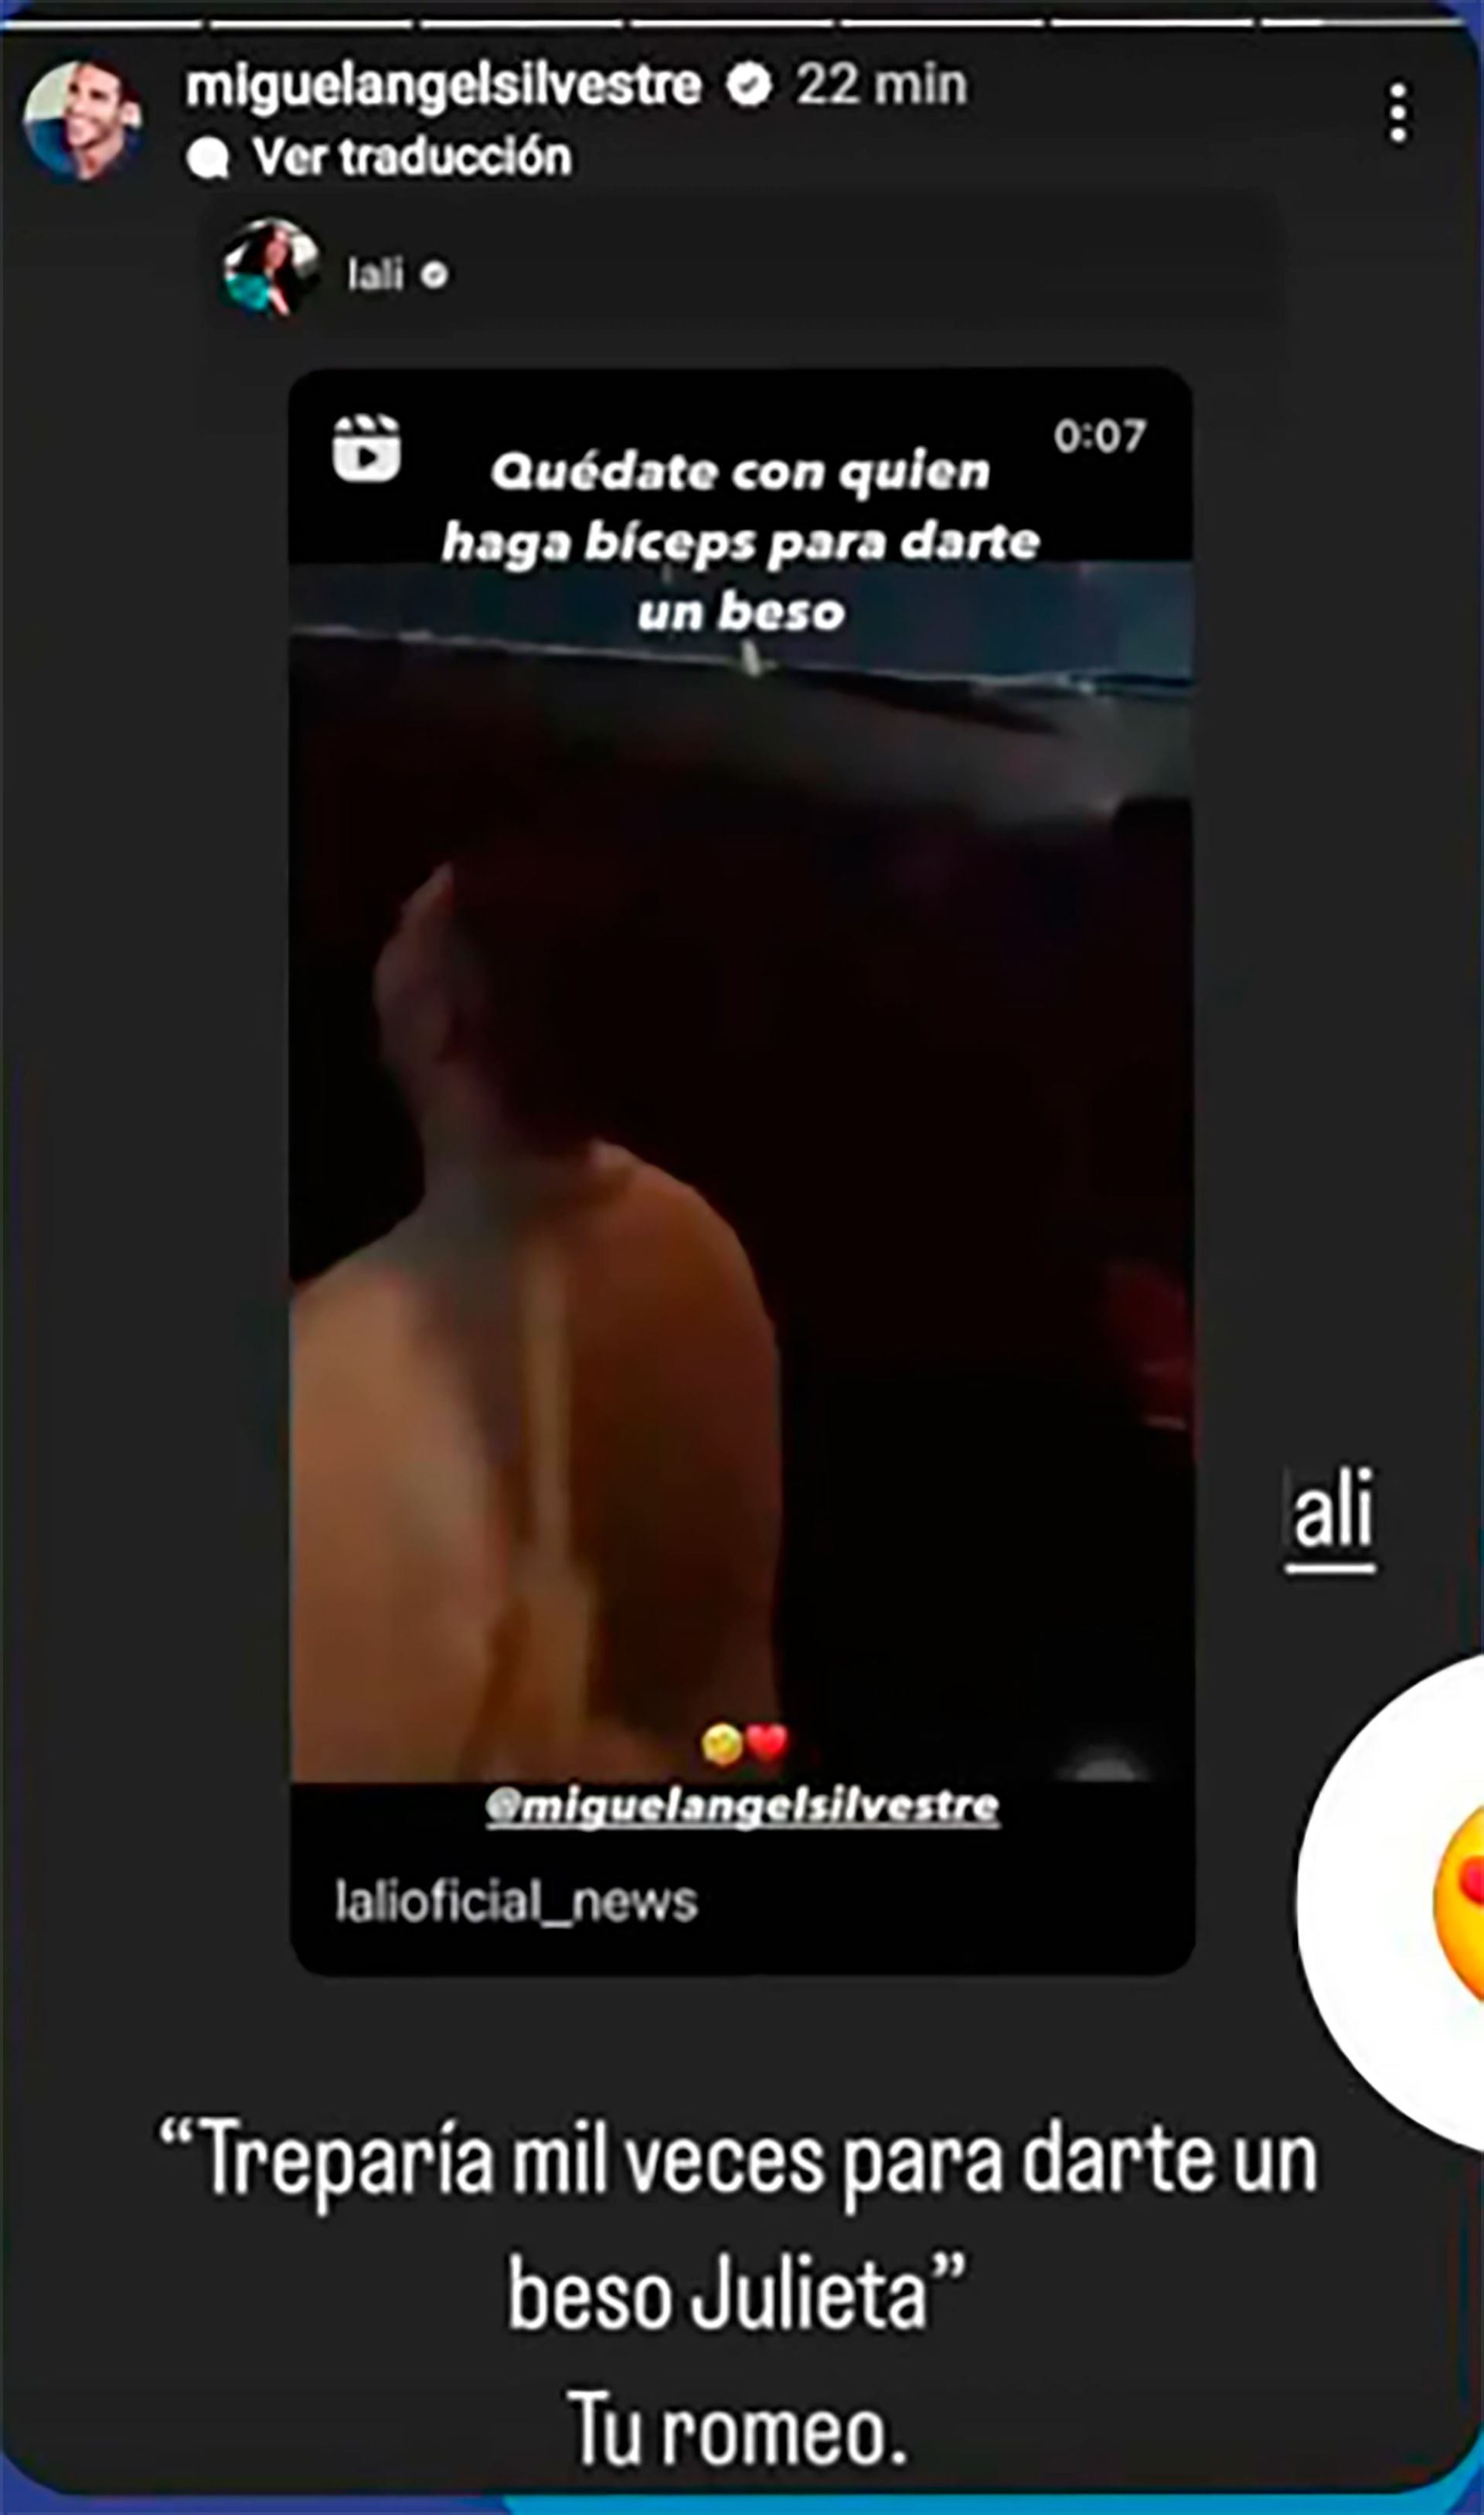 El cariñoso mensaje de Miguel Ángel Silvestre para Lali (Instagram)